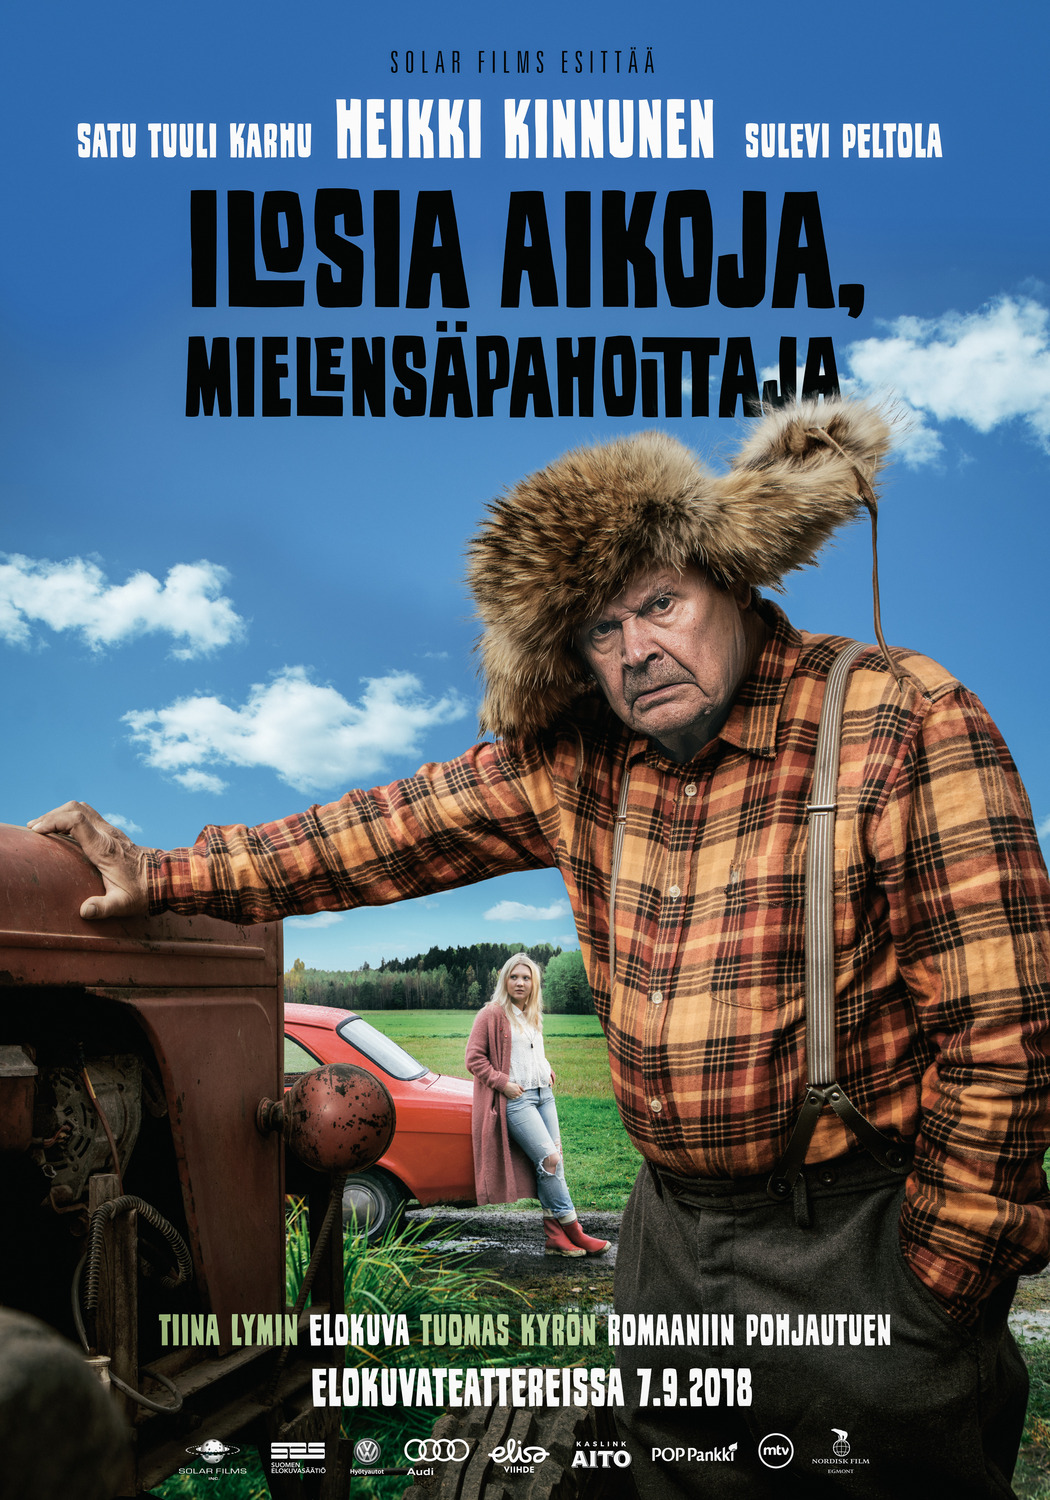 Extra Large Movie Poster Image for Ilosia aikoja, Mielensäpahoittaja (#1 of 2)